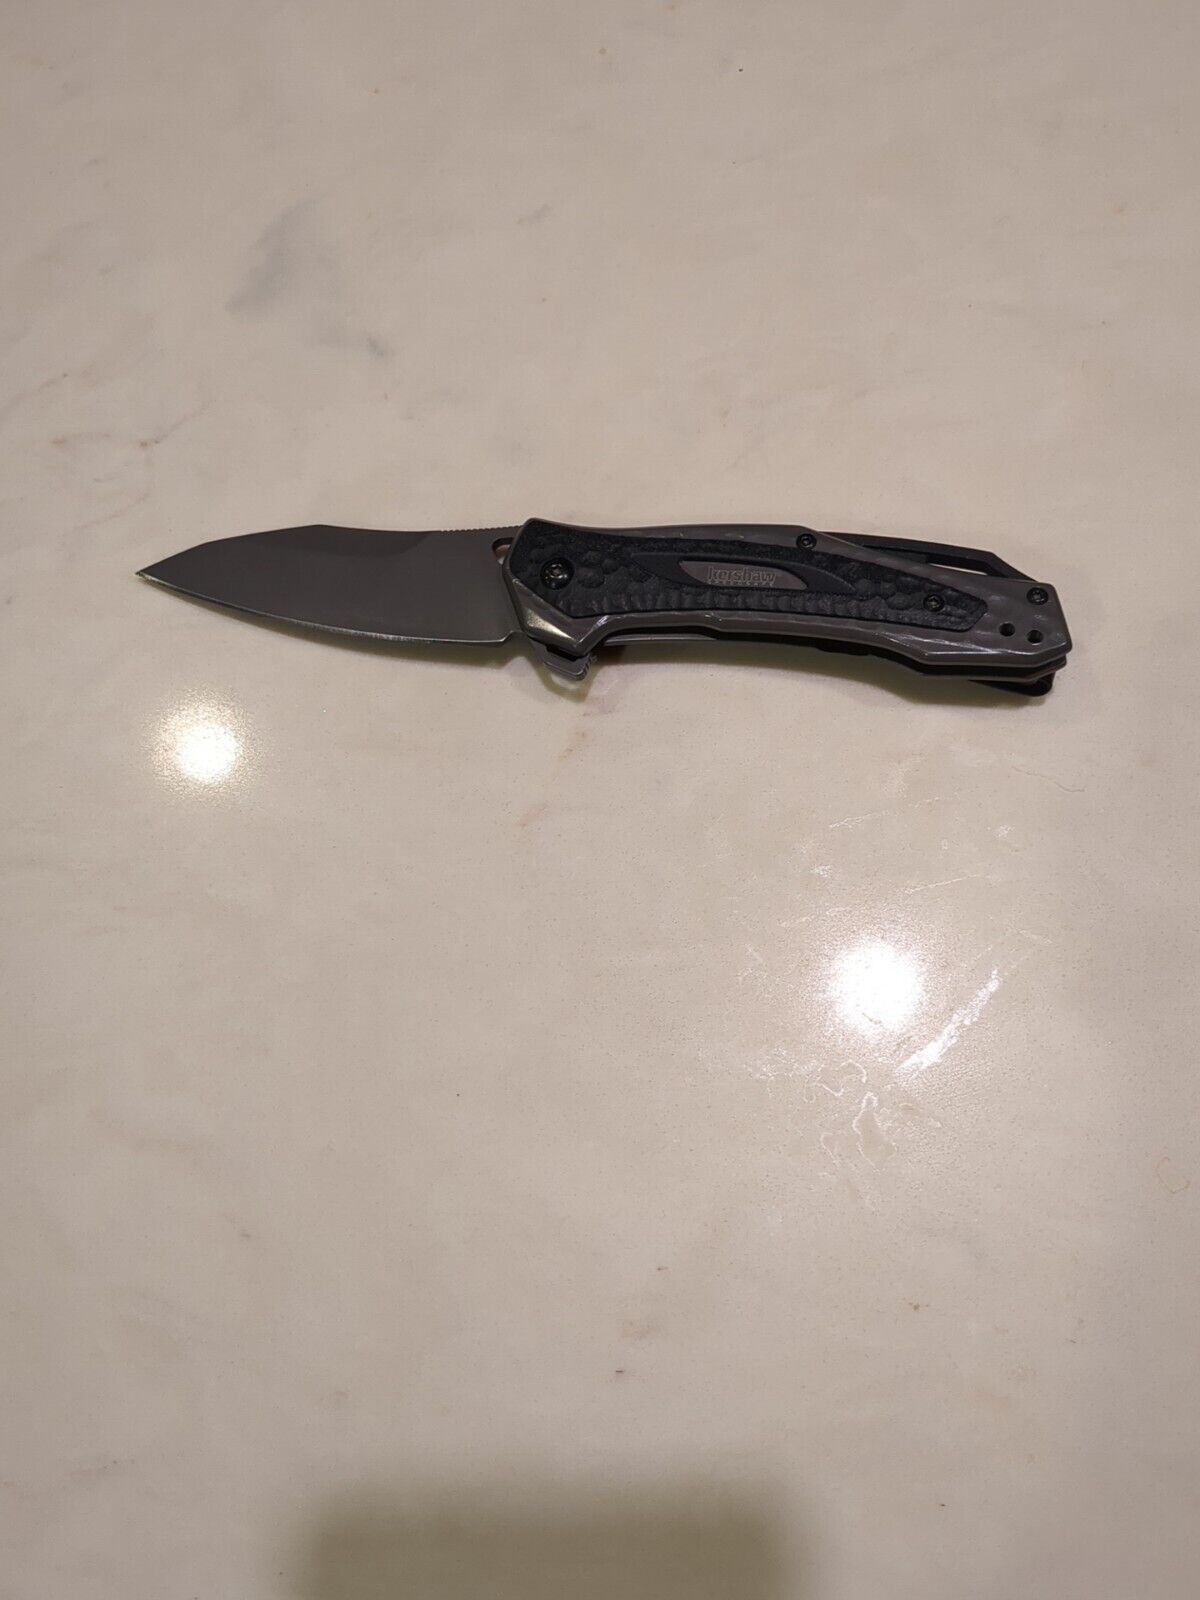 Kershaw Vedder Discontinued Pocket Knife